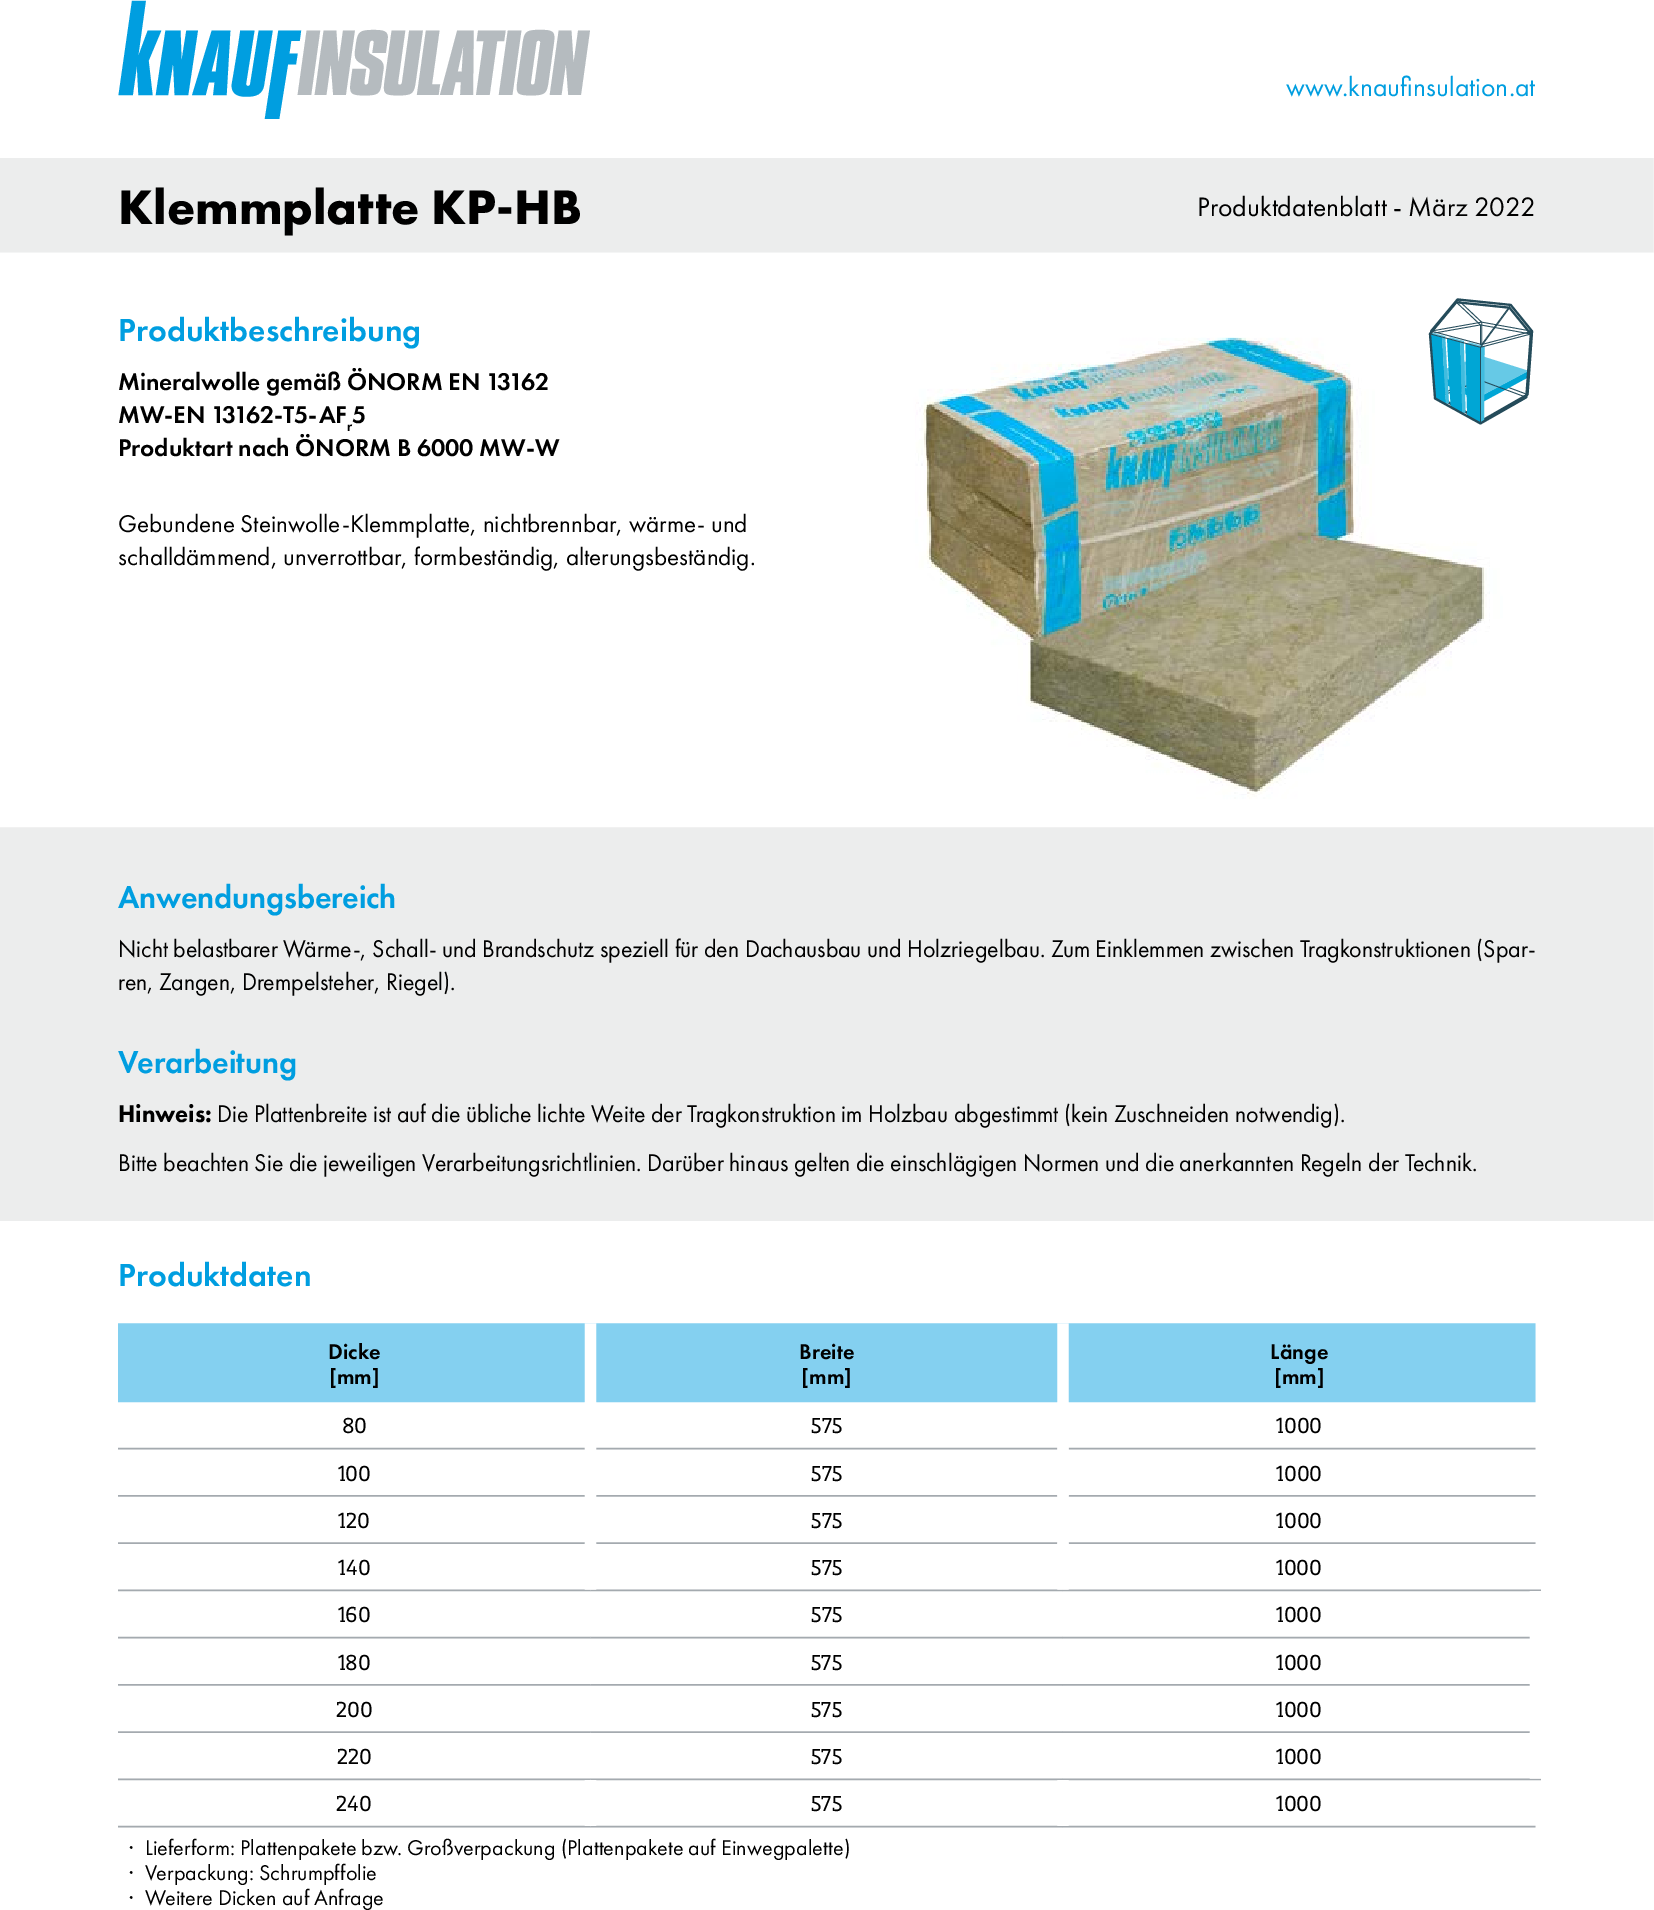 Klemmplatte KP-HB, Produktdatenblatt